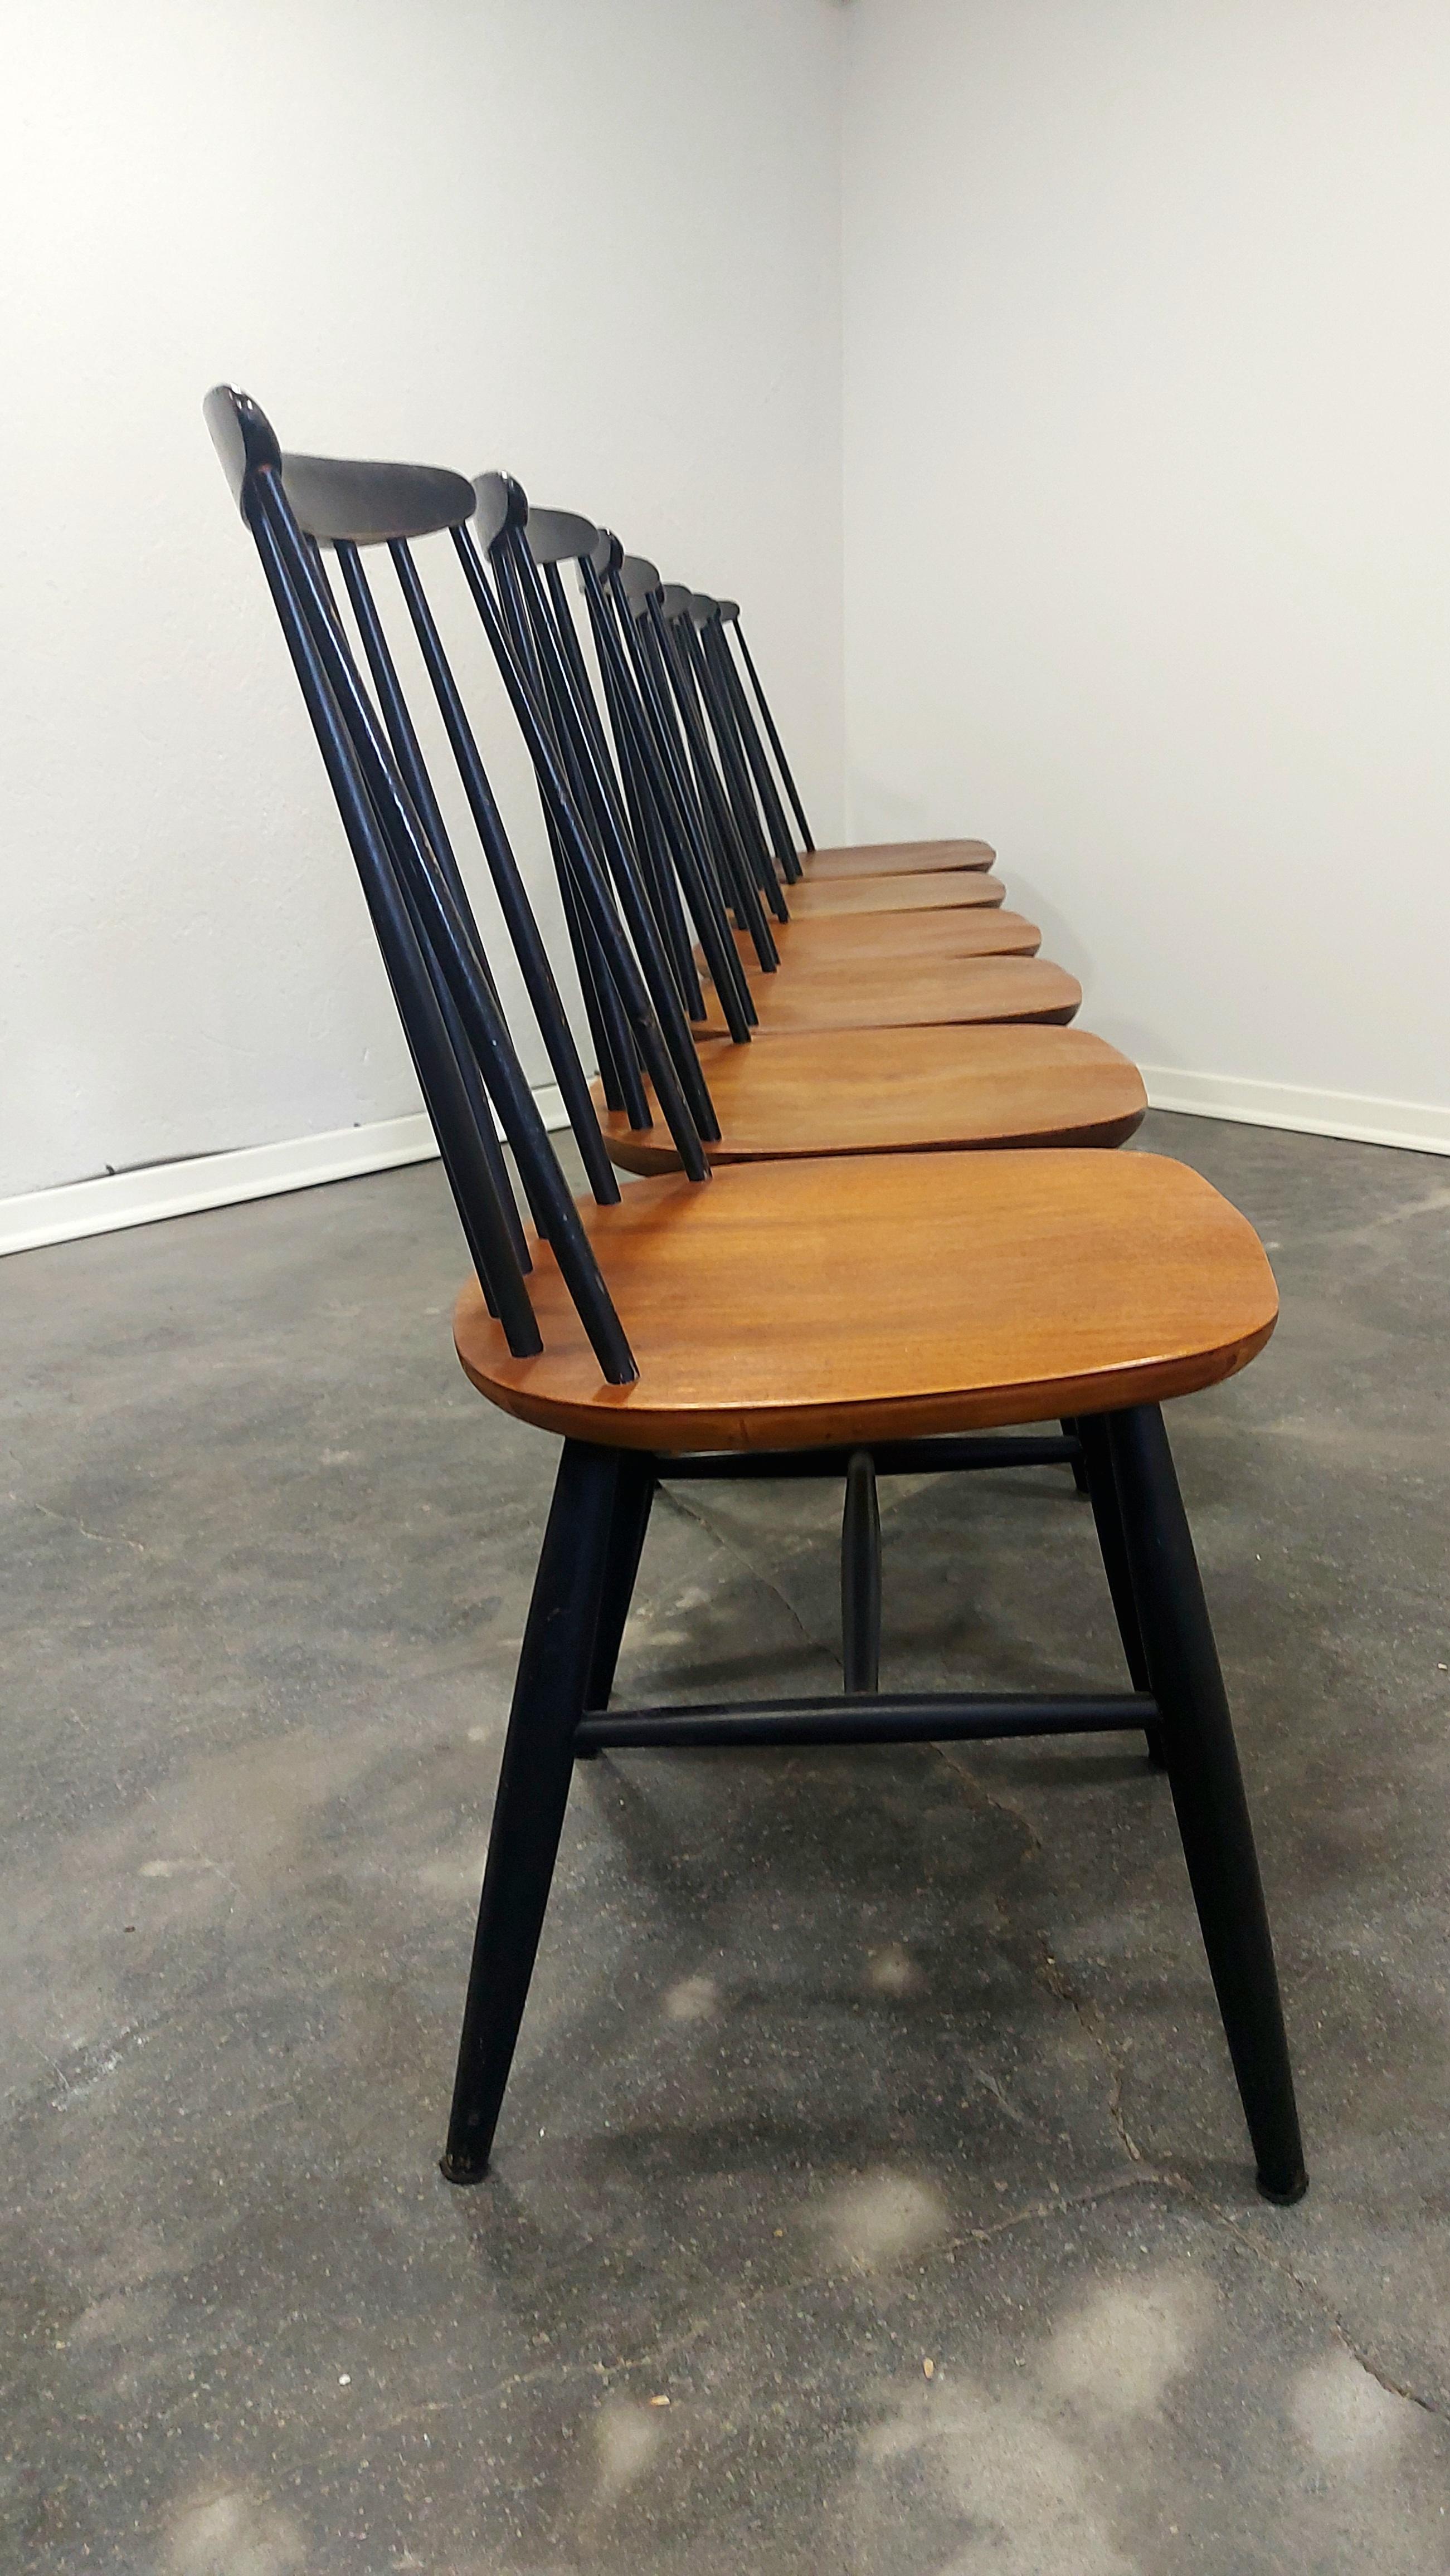 Fannet Chair by Ilmari Tapiovaara, 1960s 1 of 6 5